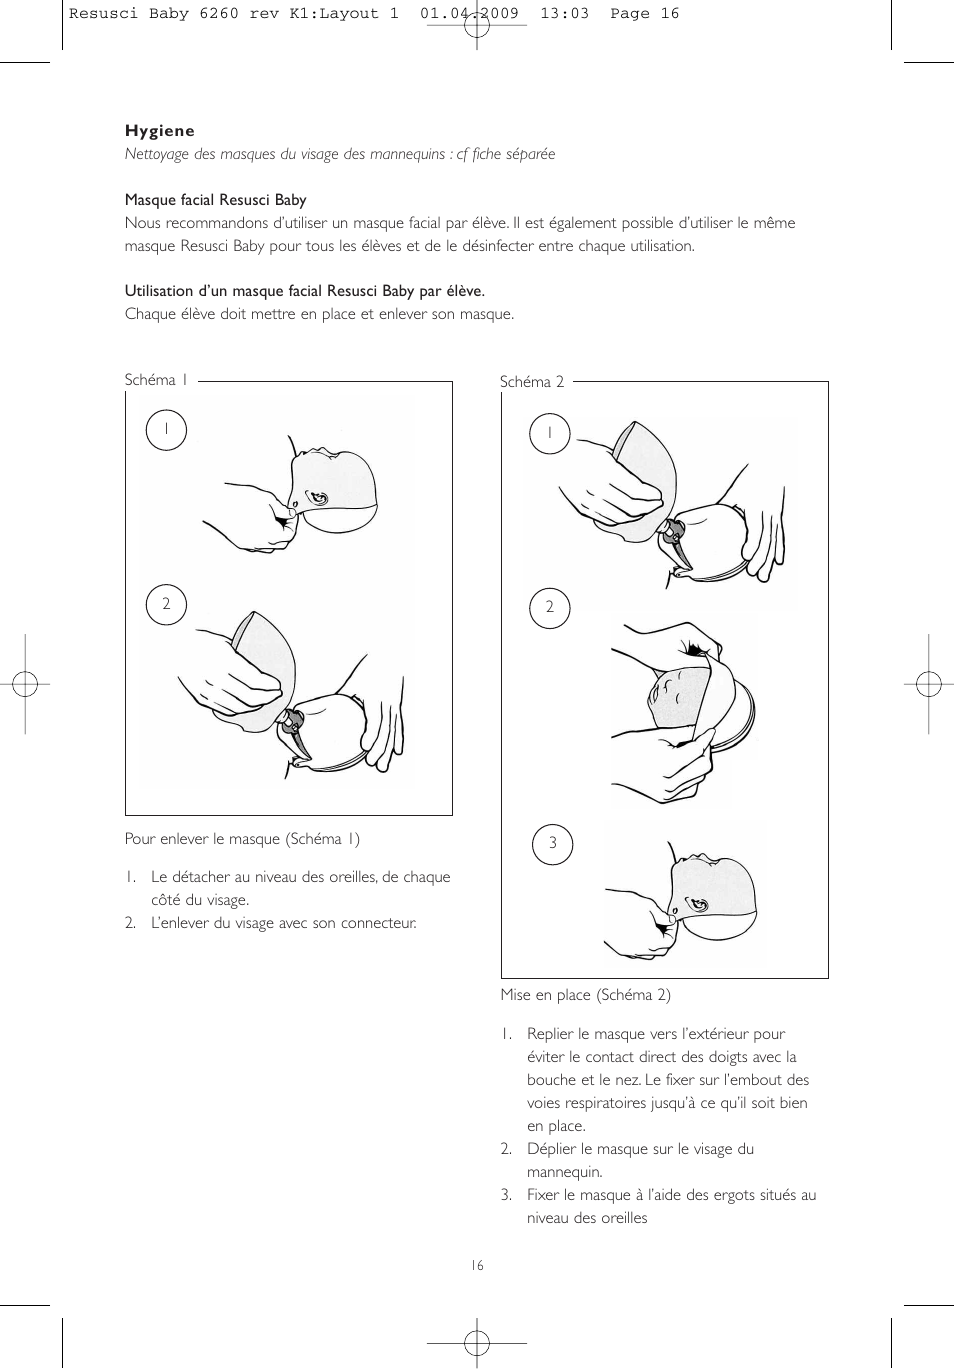 Laerdal Resusci Baby User Manual | Page 16 / 56 | Original mode